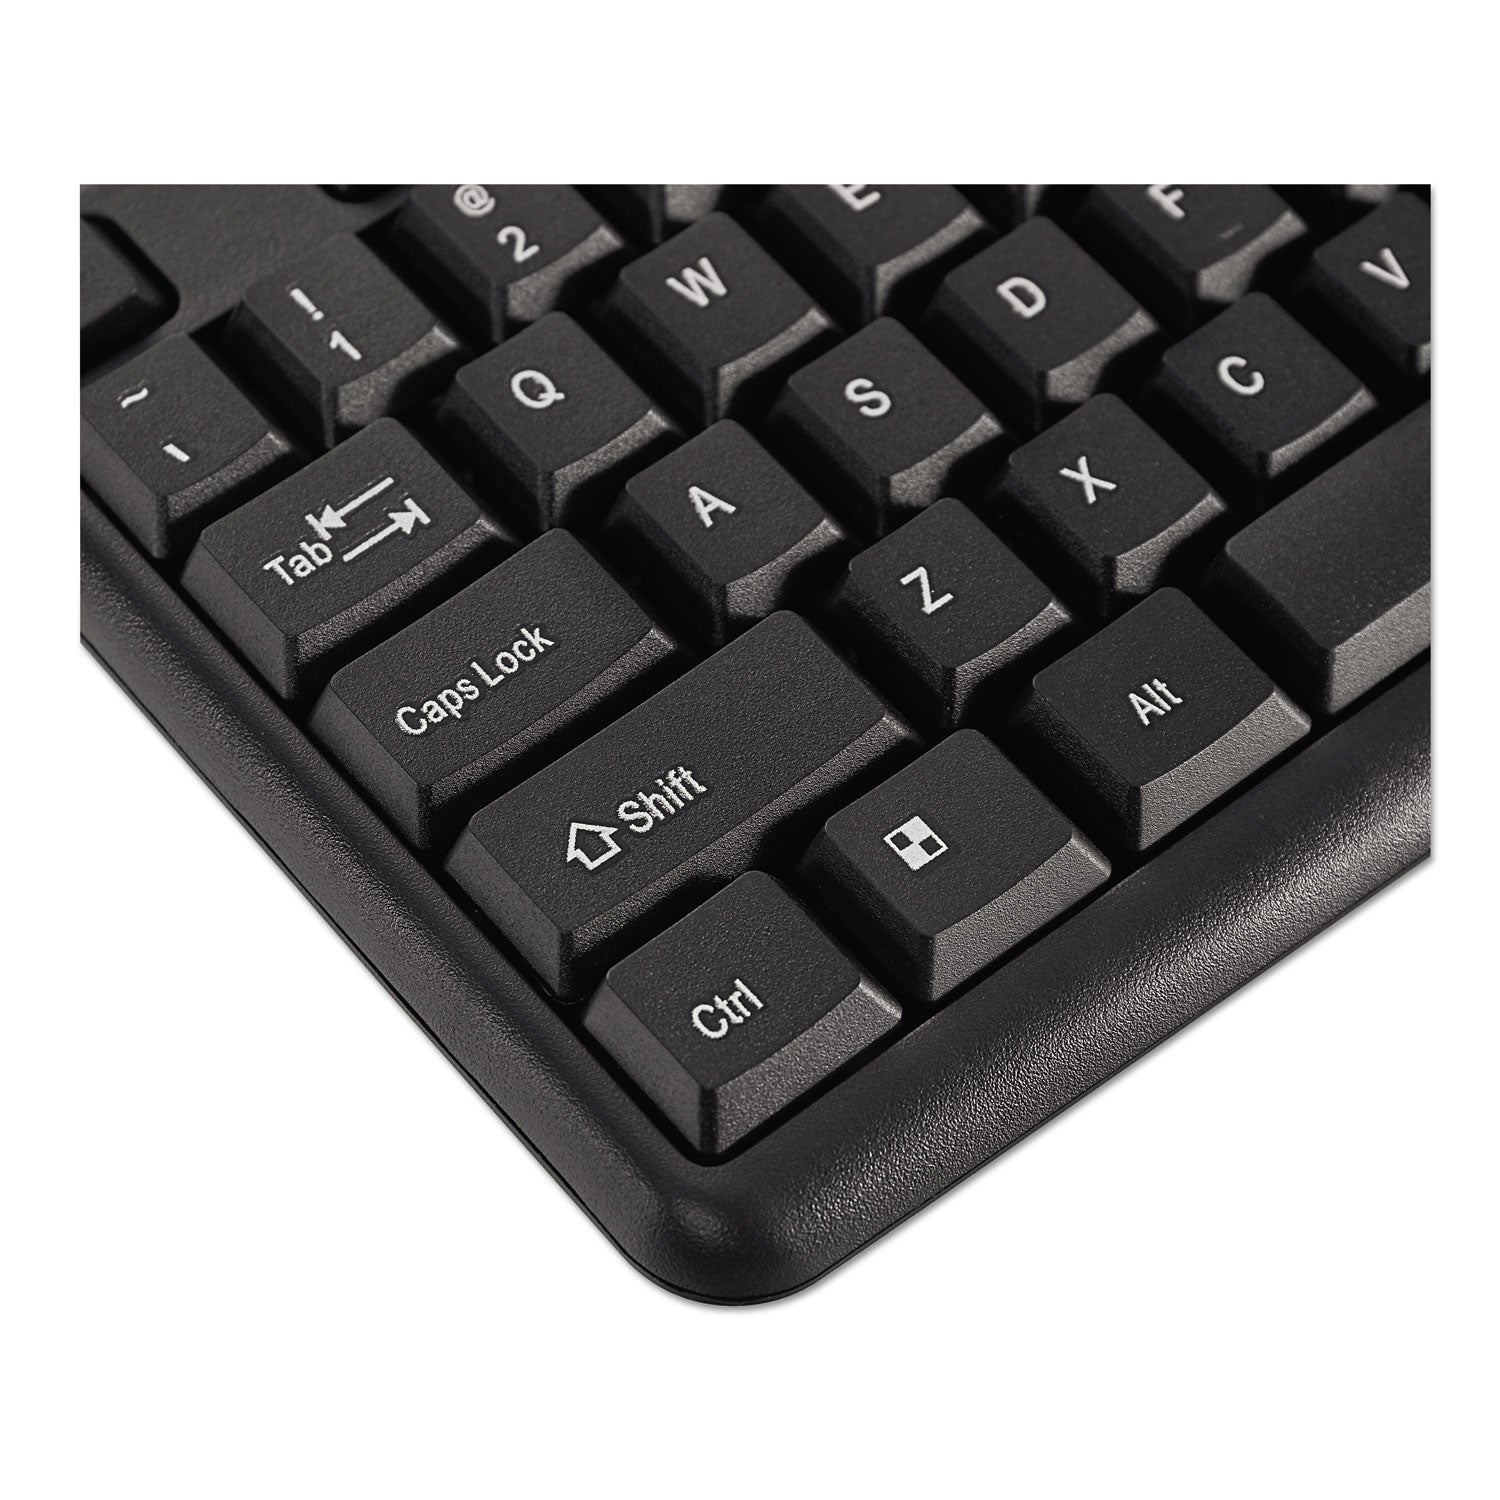 slimline-keyboard-and-mouse-usb-20-black_ivr69202 - 4